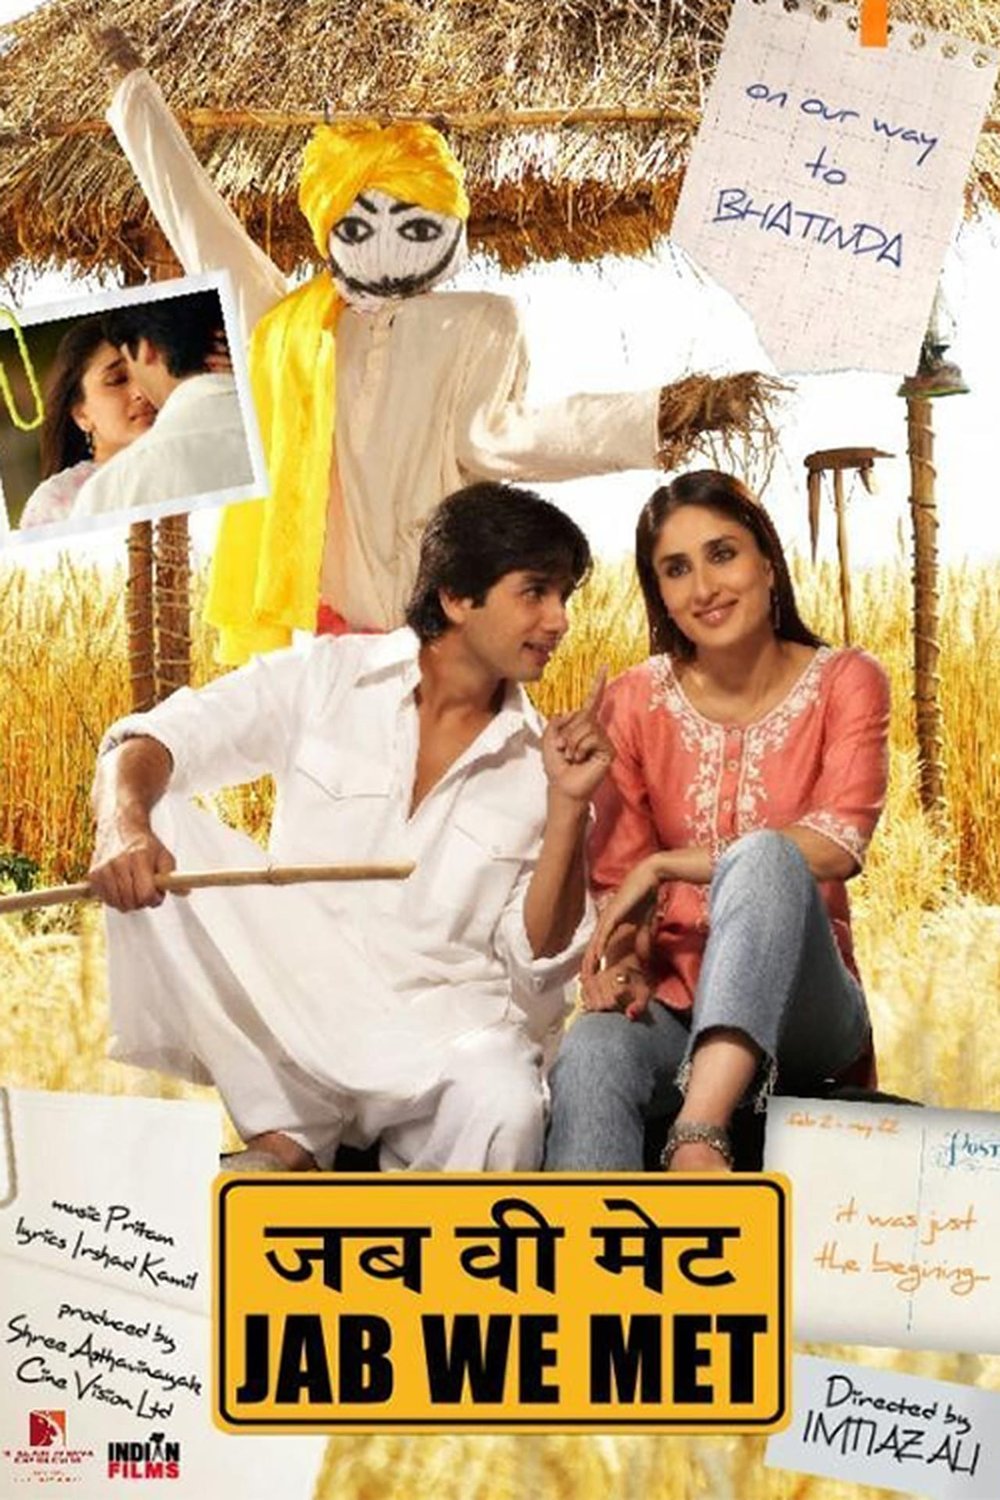 Hindi poster of the movie Jab We Met